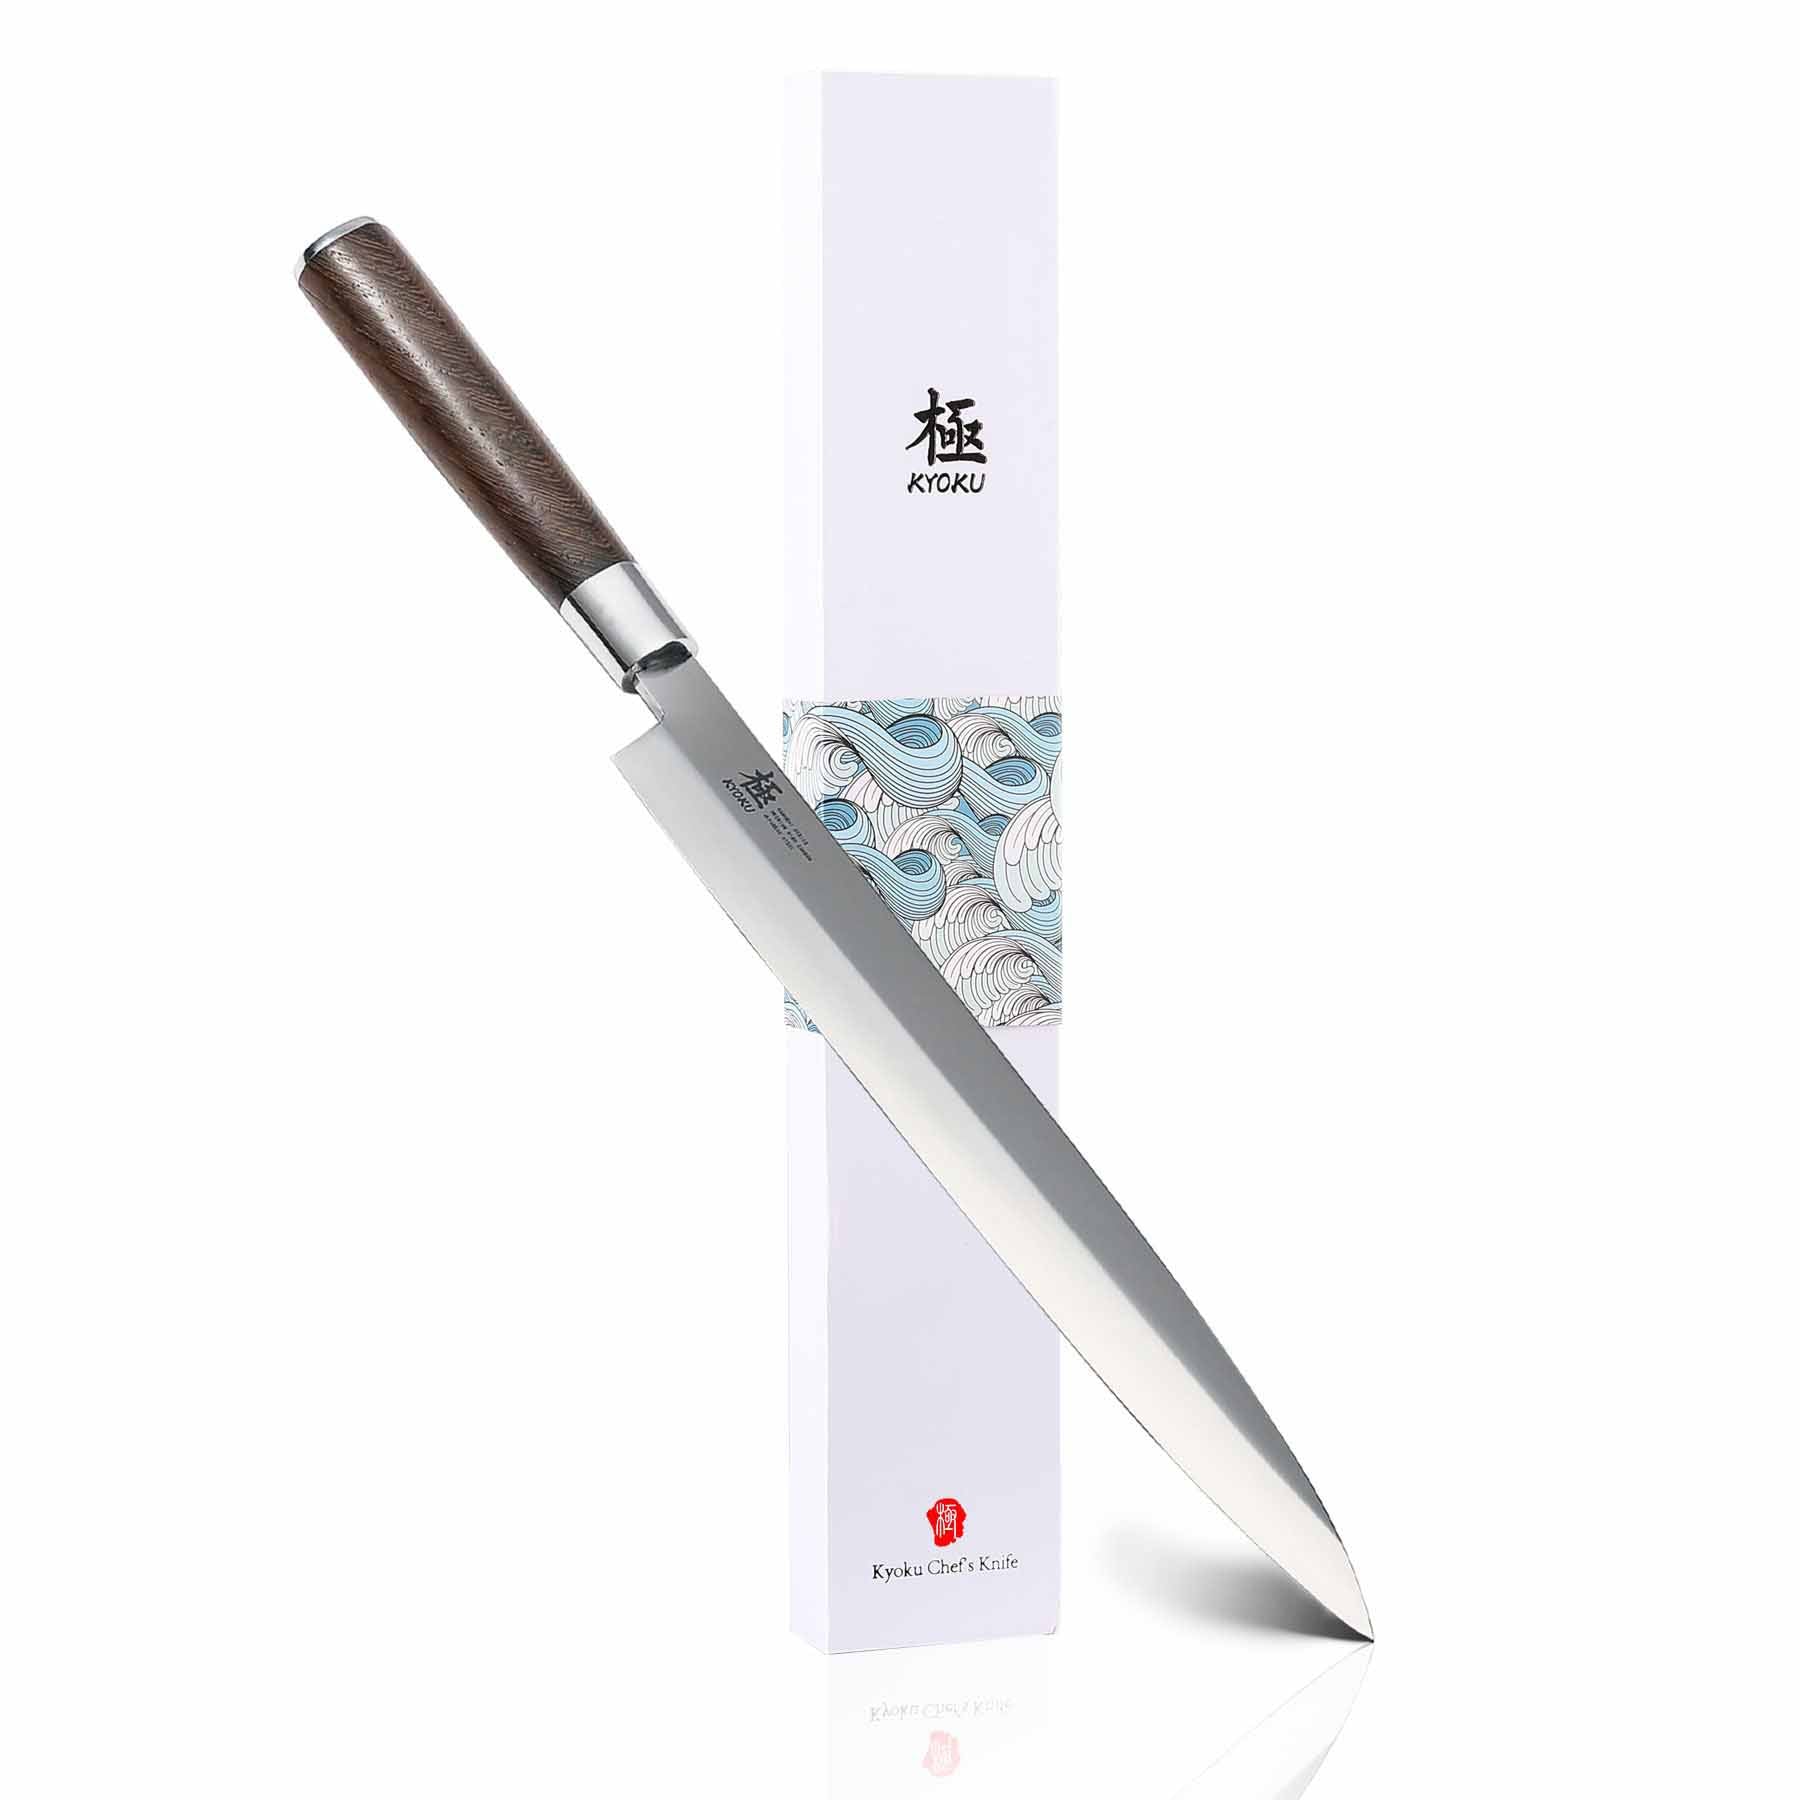 Maestro Wu G6 Japanese Yanagi Sushi Fish Knife - 4 Sizes